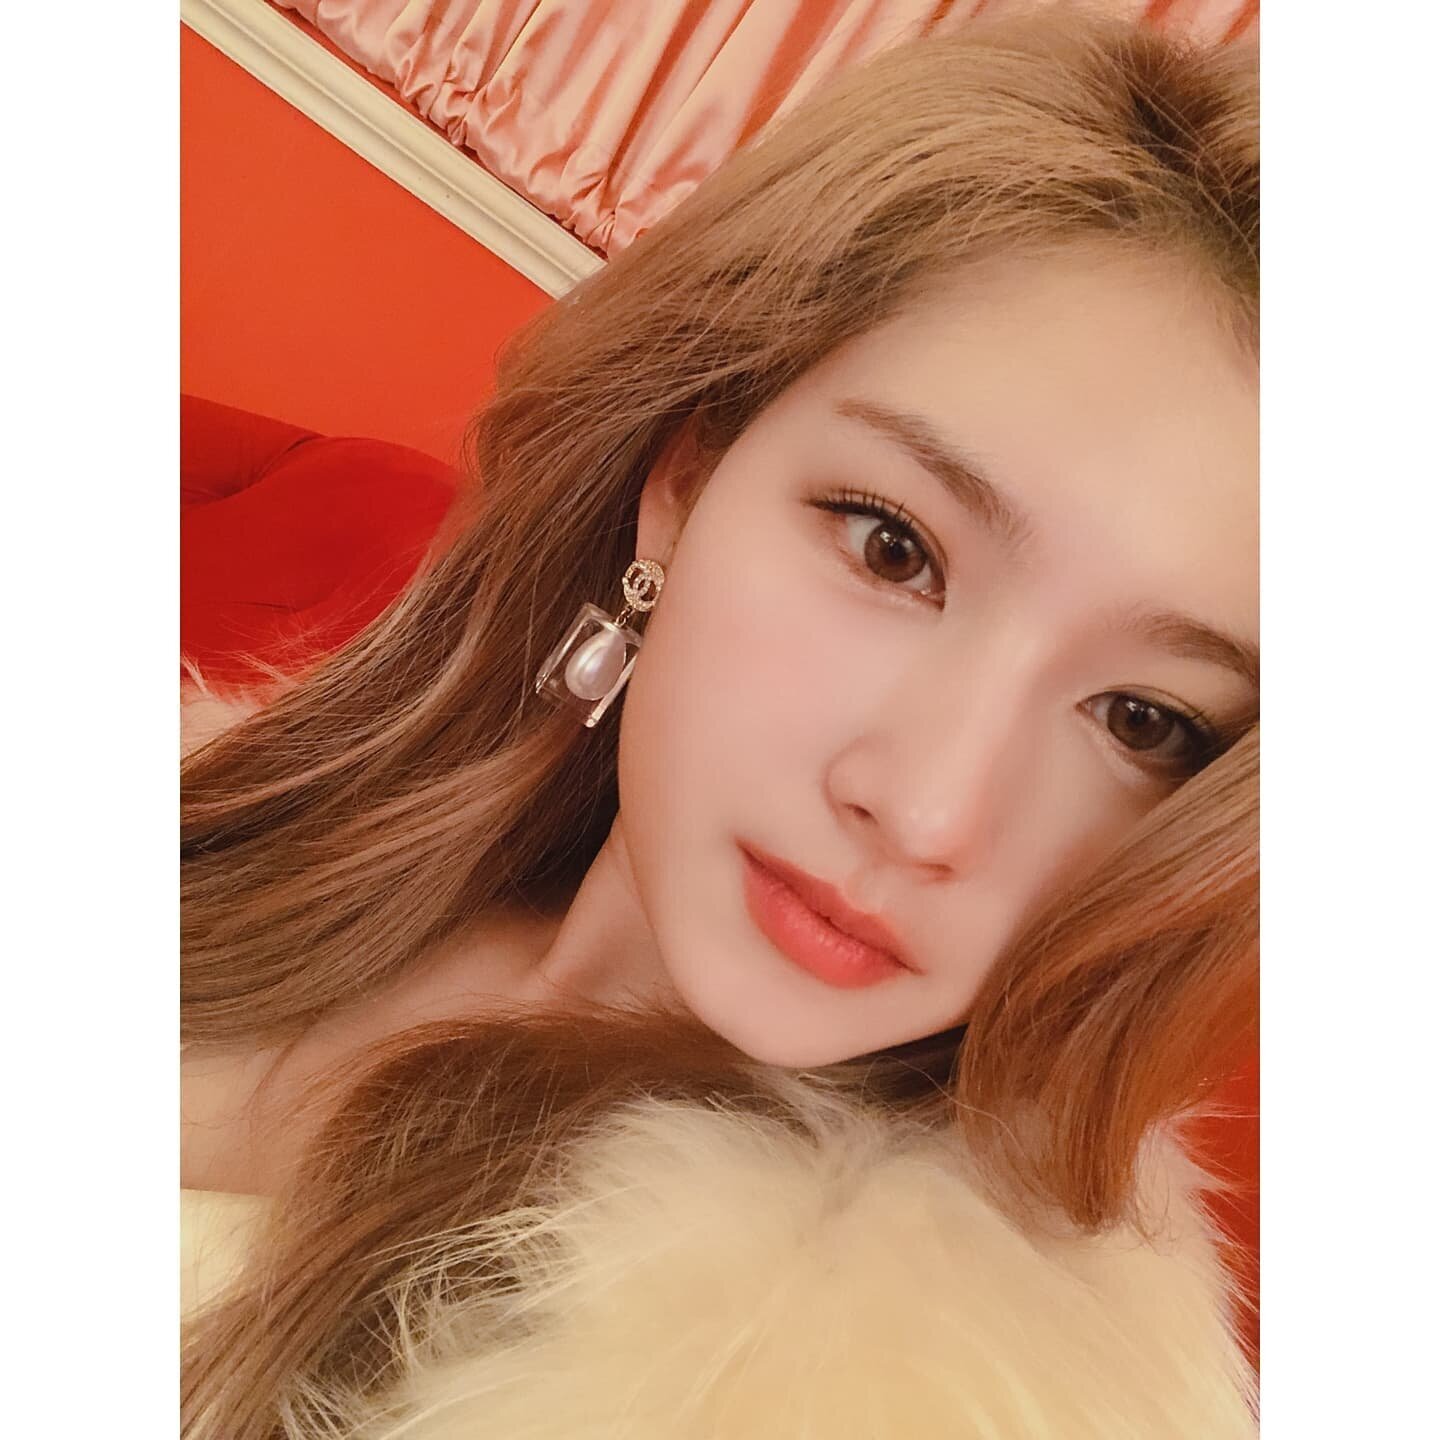 July 28 21 Twice Instagram Update Jihyo Sana Kpopping